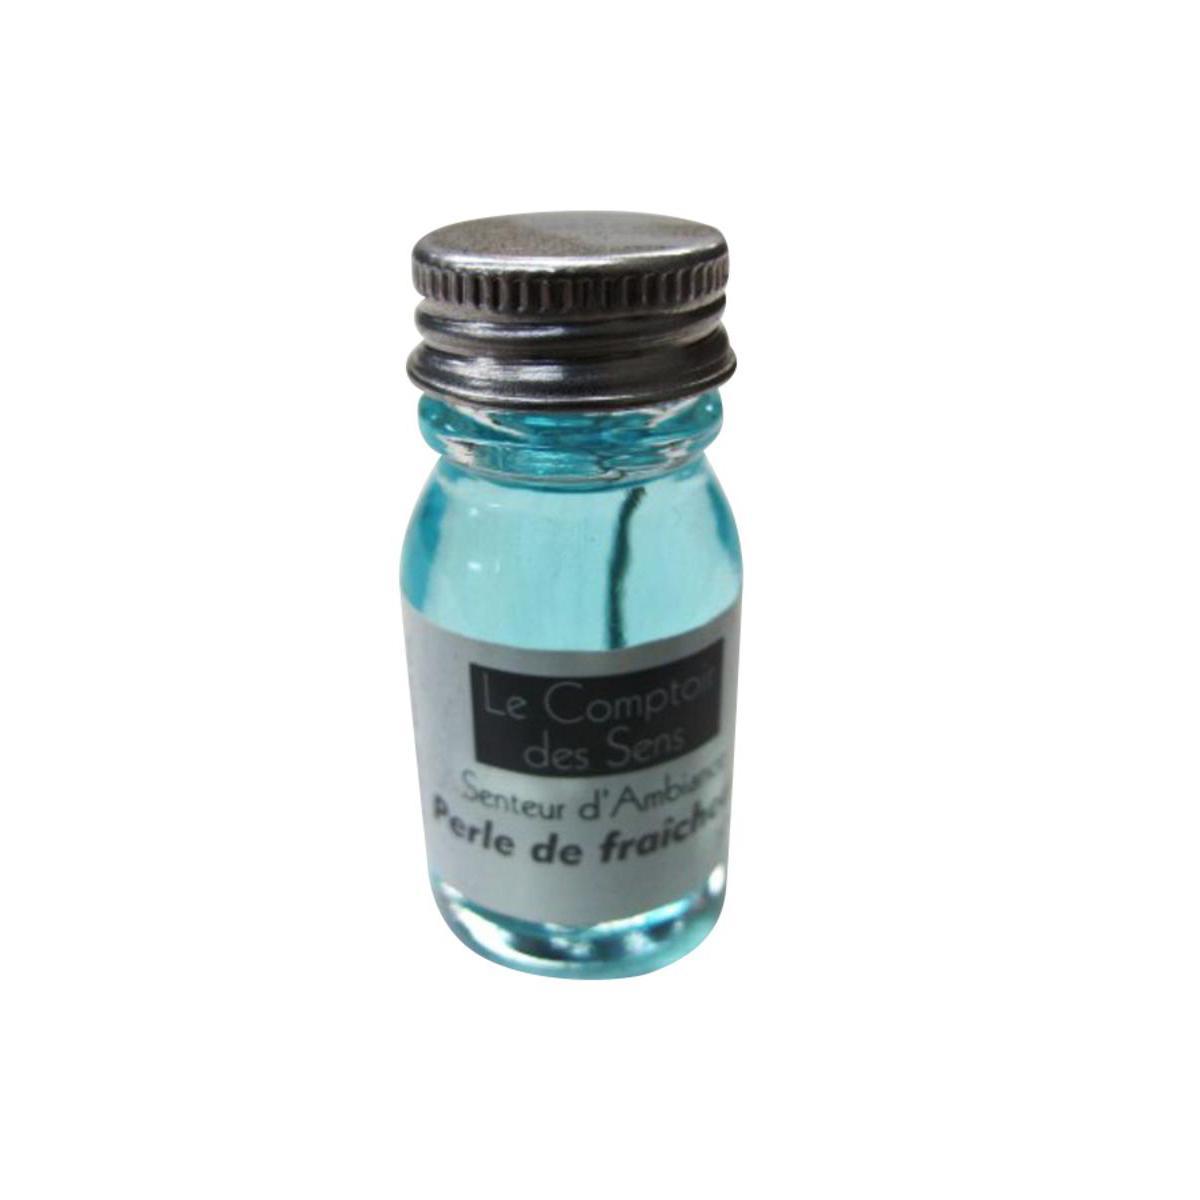 Extrait senteur perle de fraîcheur - Verre - D 2,5 x 5 cm - 10 ml - Bleu